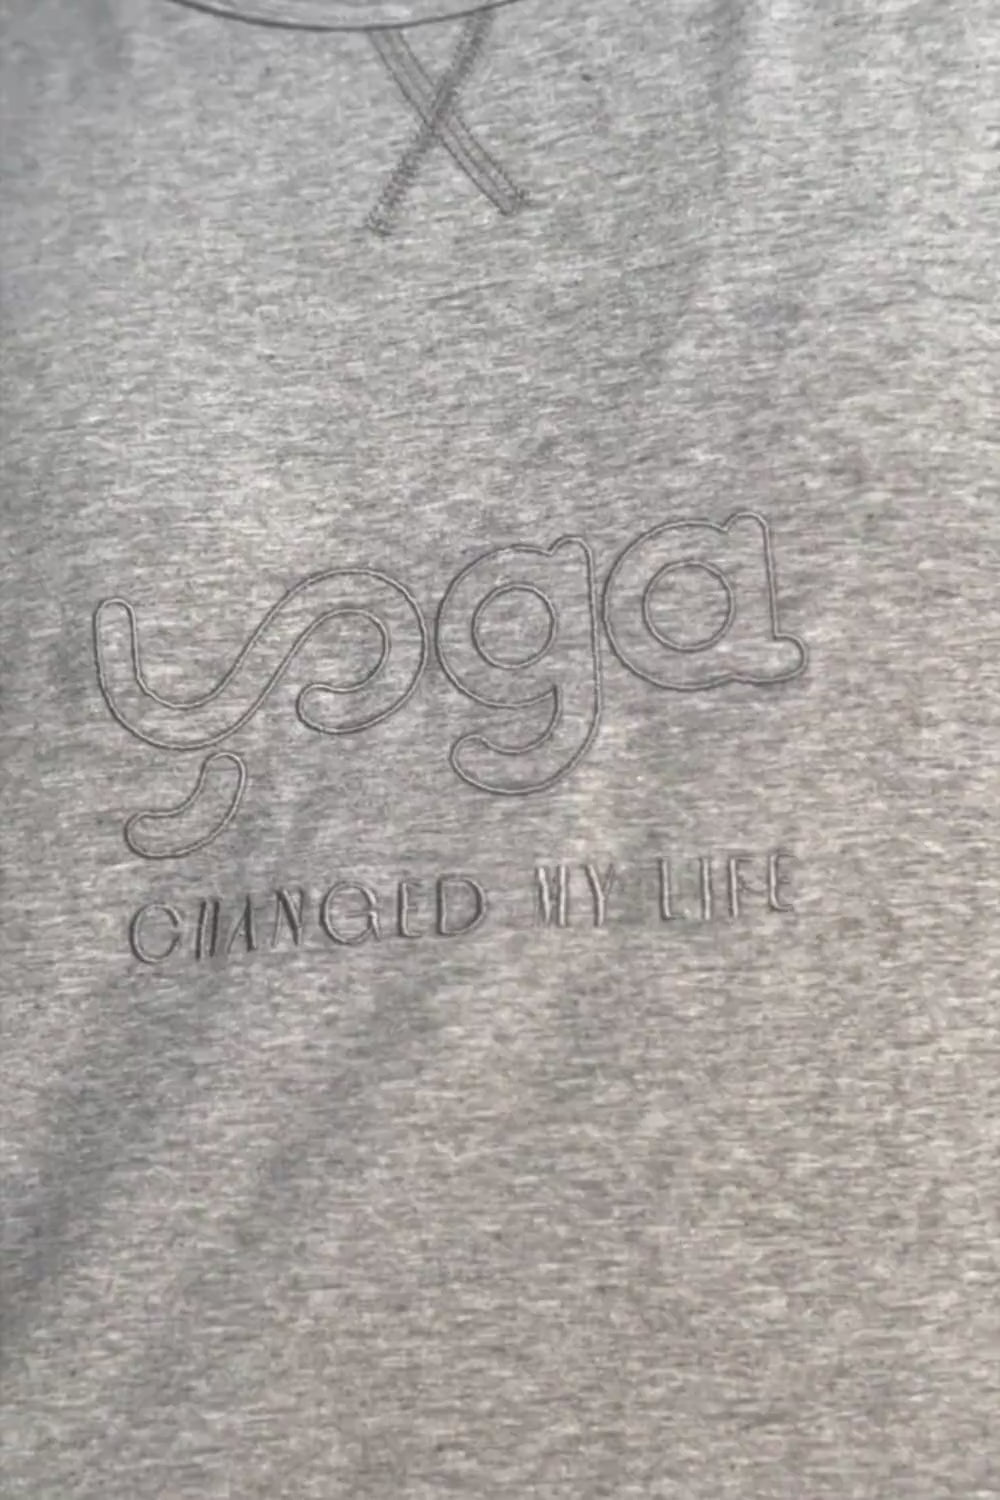 Camiseta Yoga Changed, modelo básico en color gris Quiet Gray de Yogimi. Camiseta manga corta homenaje a amantes del yoga. Bordada con la frase "Yoga Changed My Life".